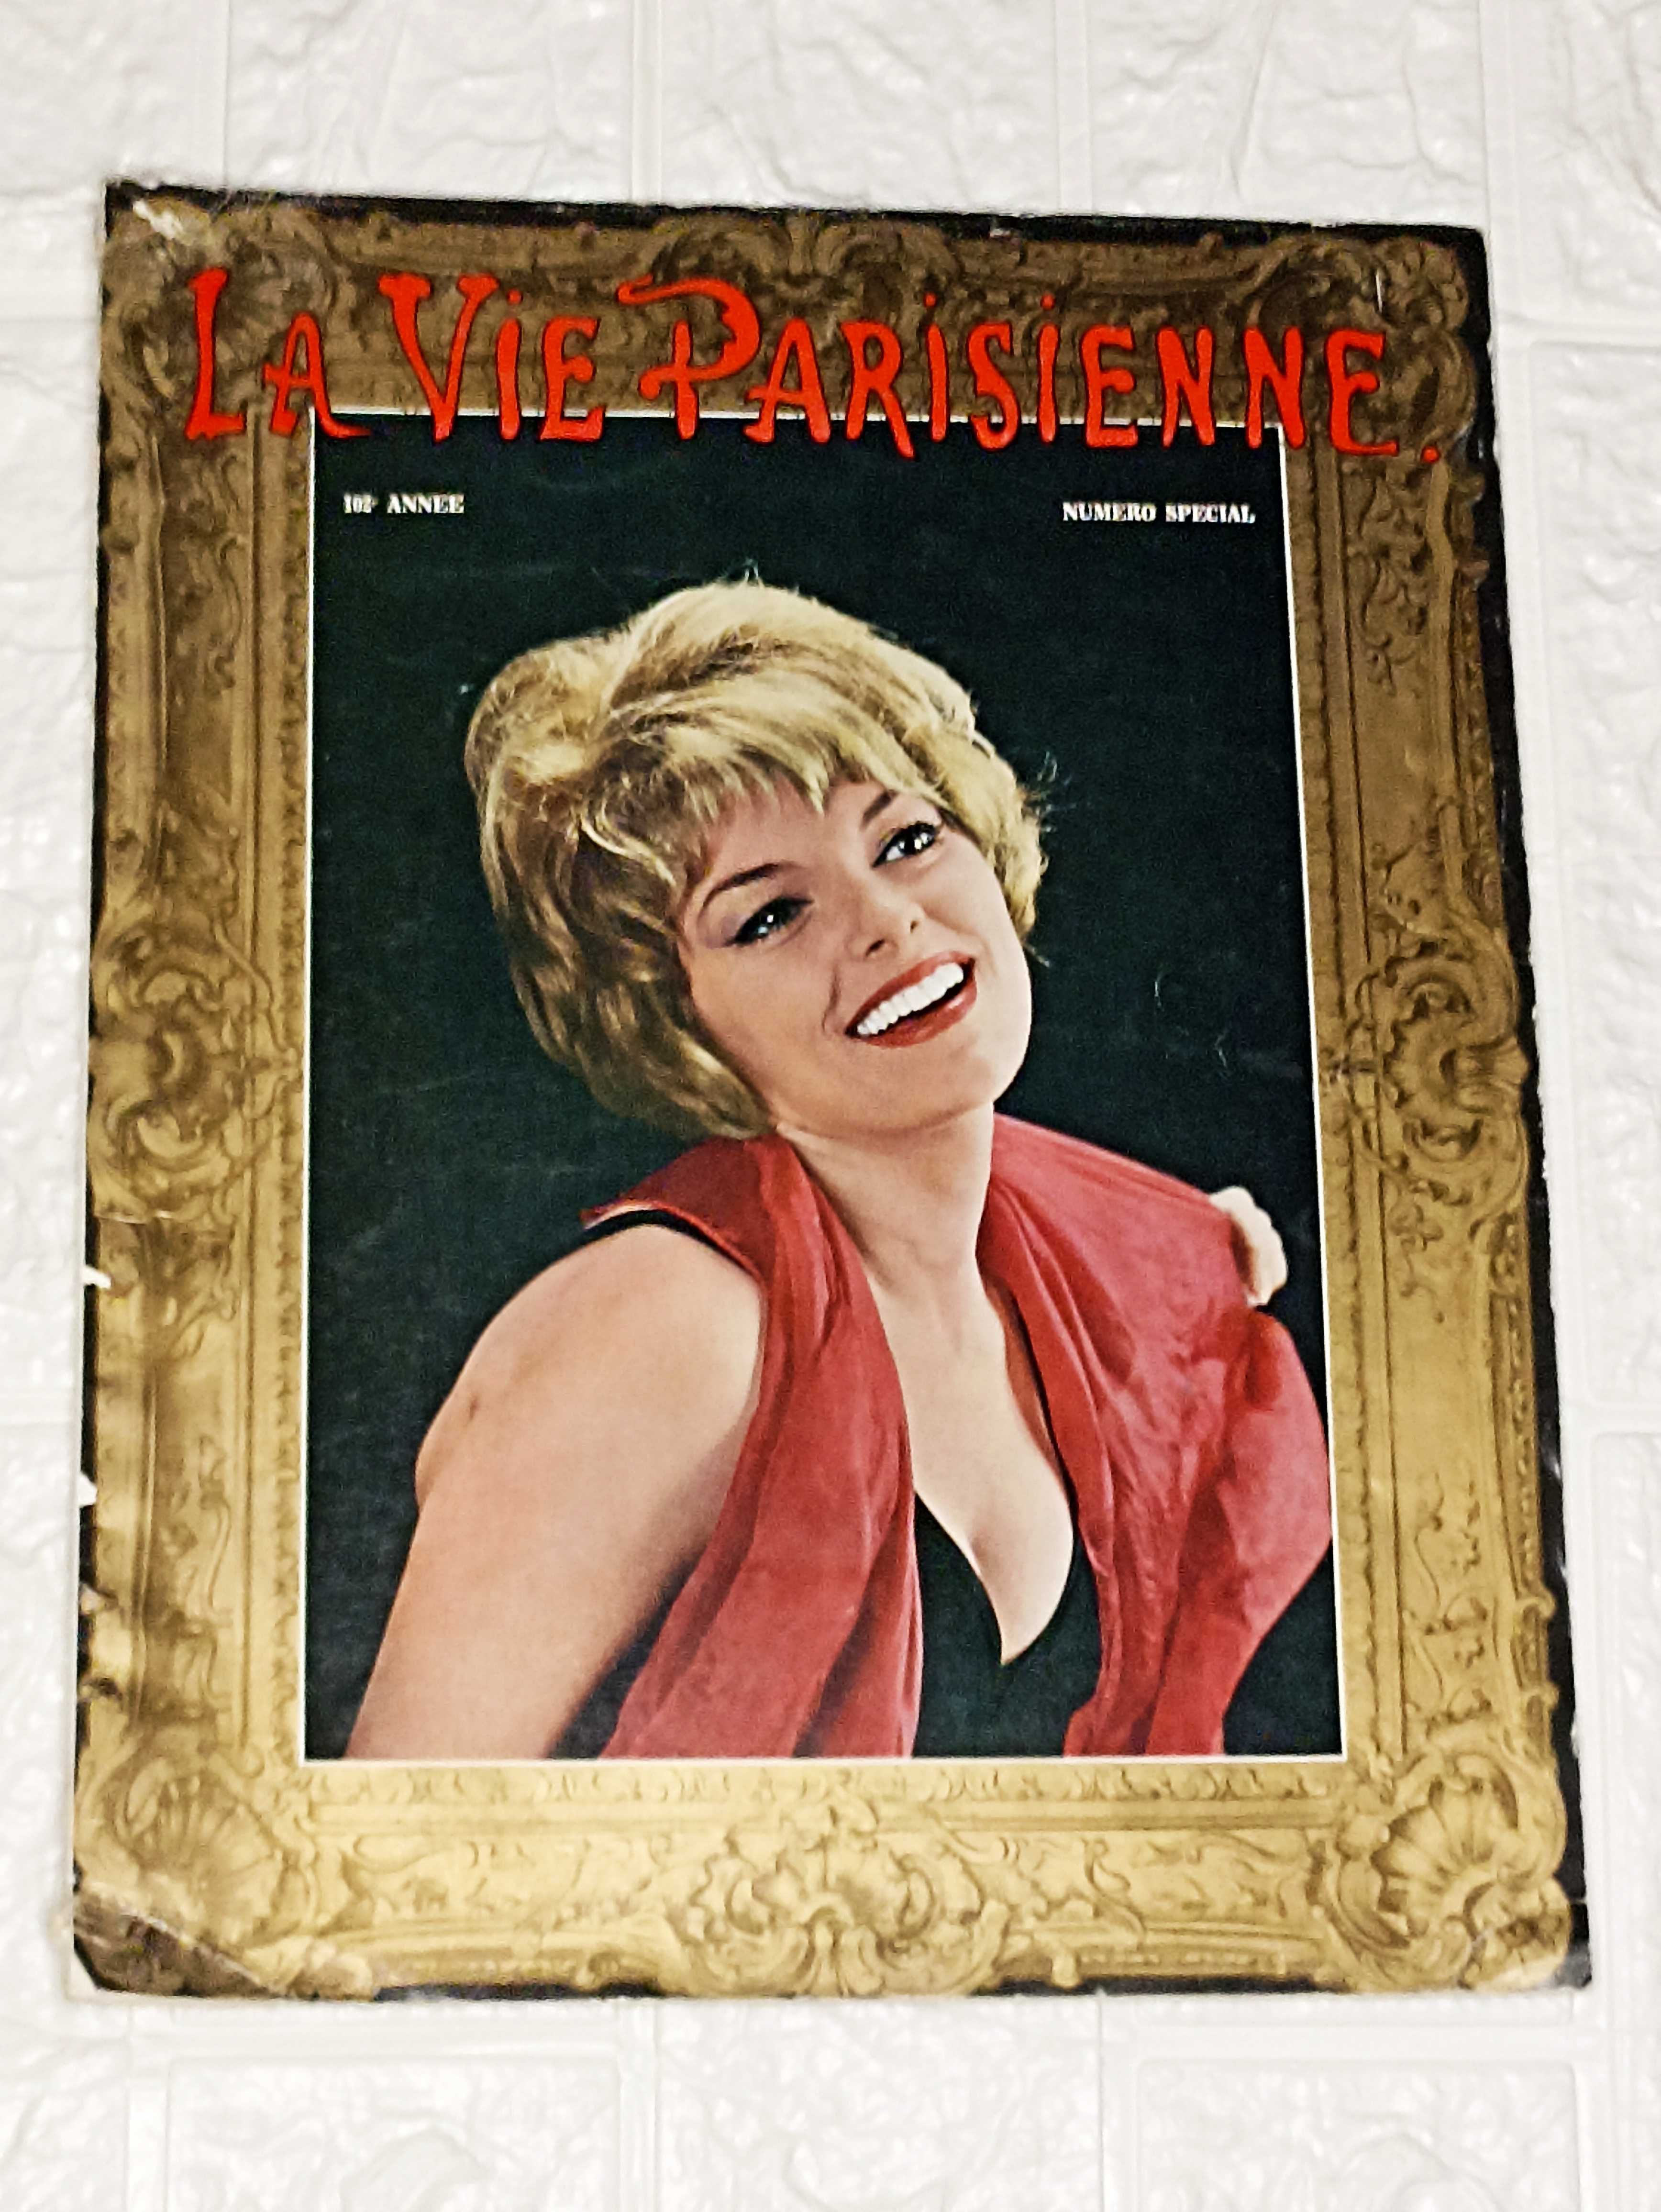 Vintage Magazine La Vie Parisienne  102º anne numero special